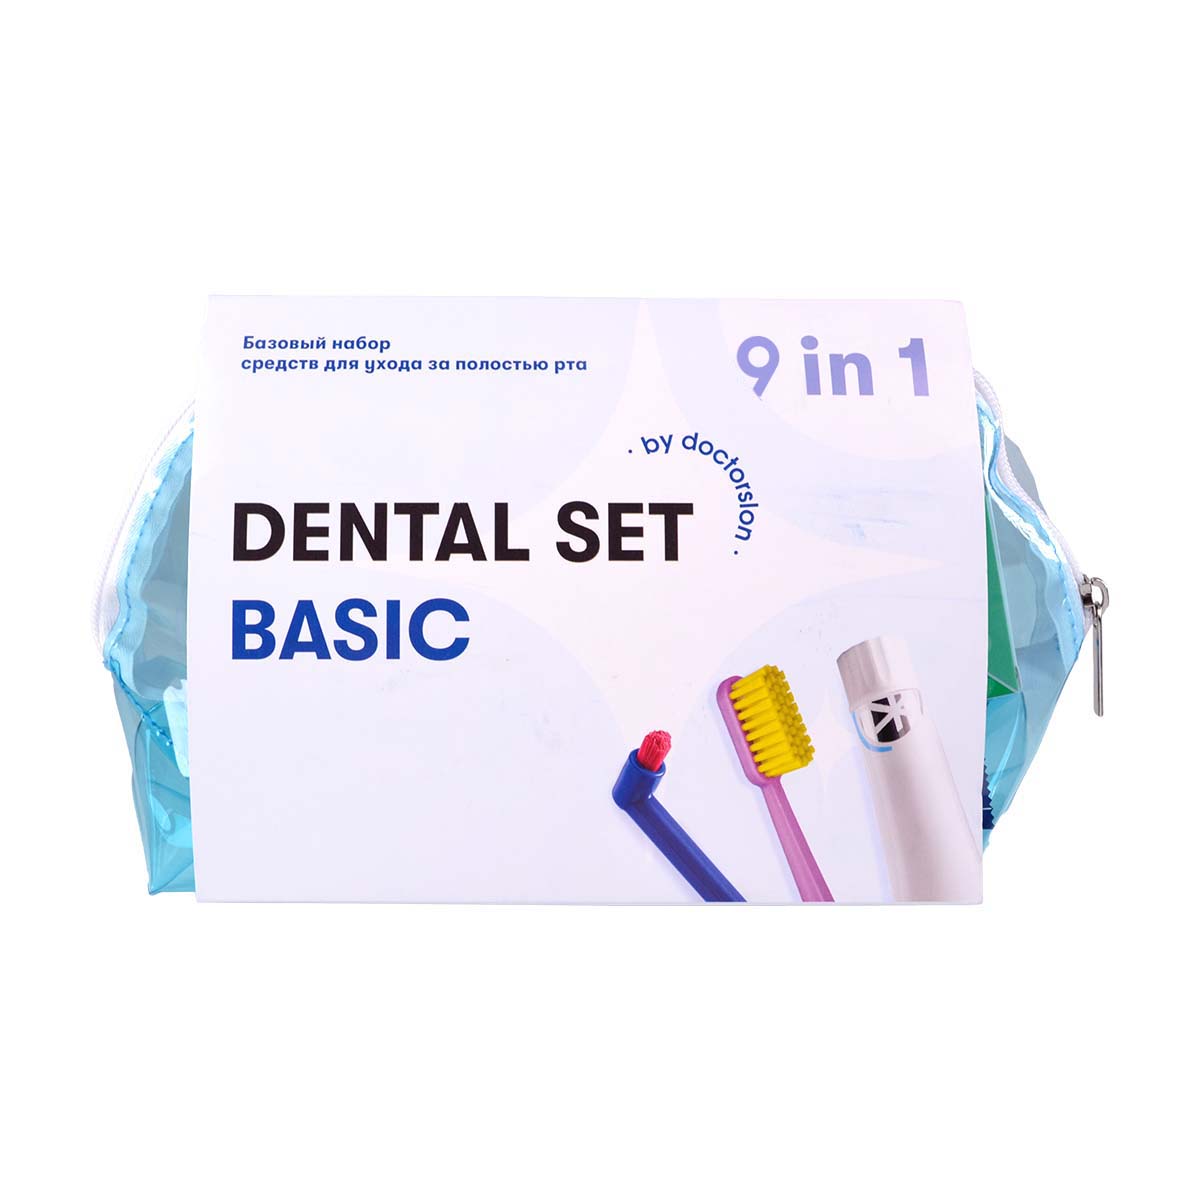 Готовый набор для гигиены Dental Box Dental Set basic готовые наборы для детской гигиены dental box детский дорожный набор